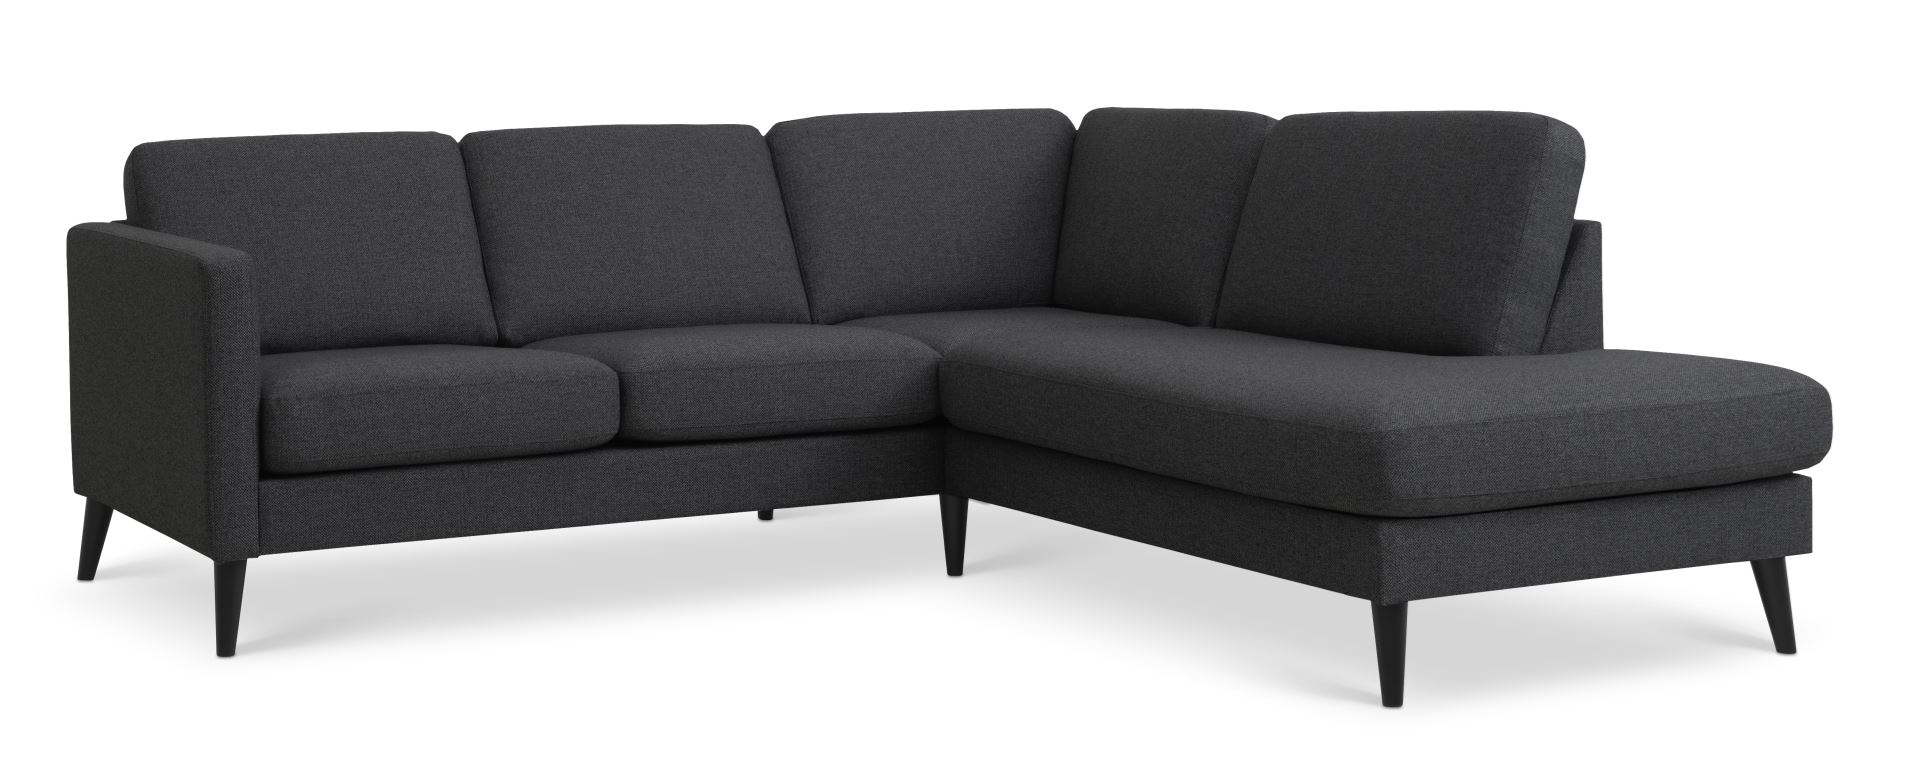 Ask sæt 53 lille OE sofa, m. højre chaiselong - antracitgrå polyester stof og sort træ